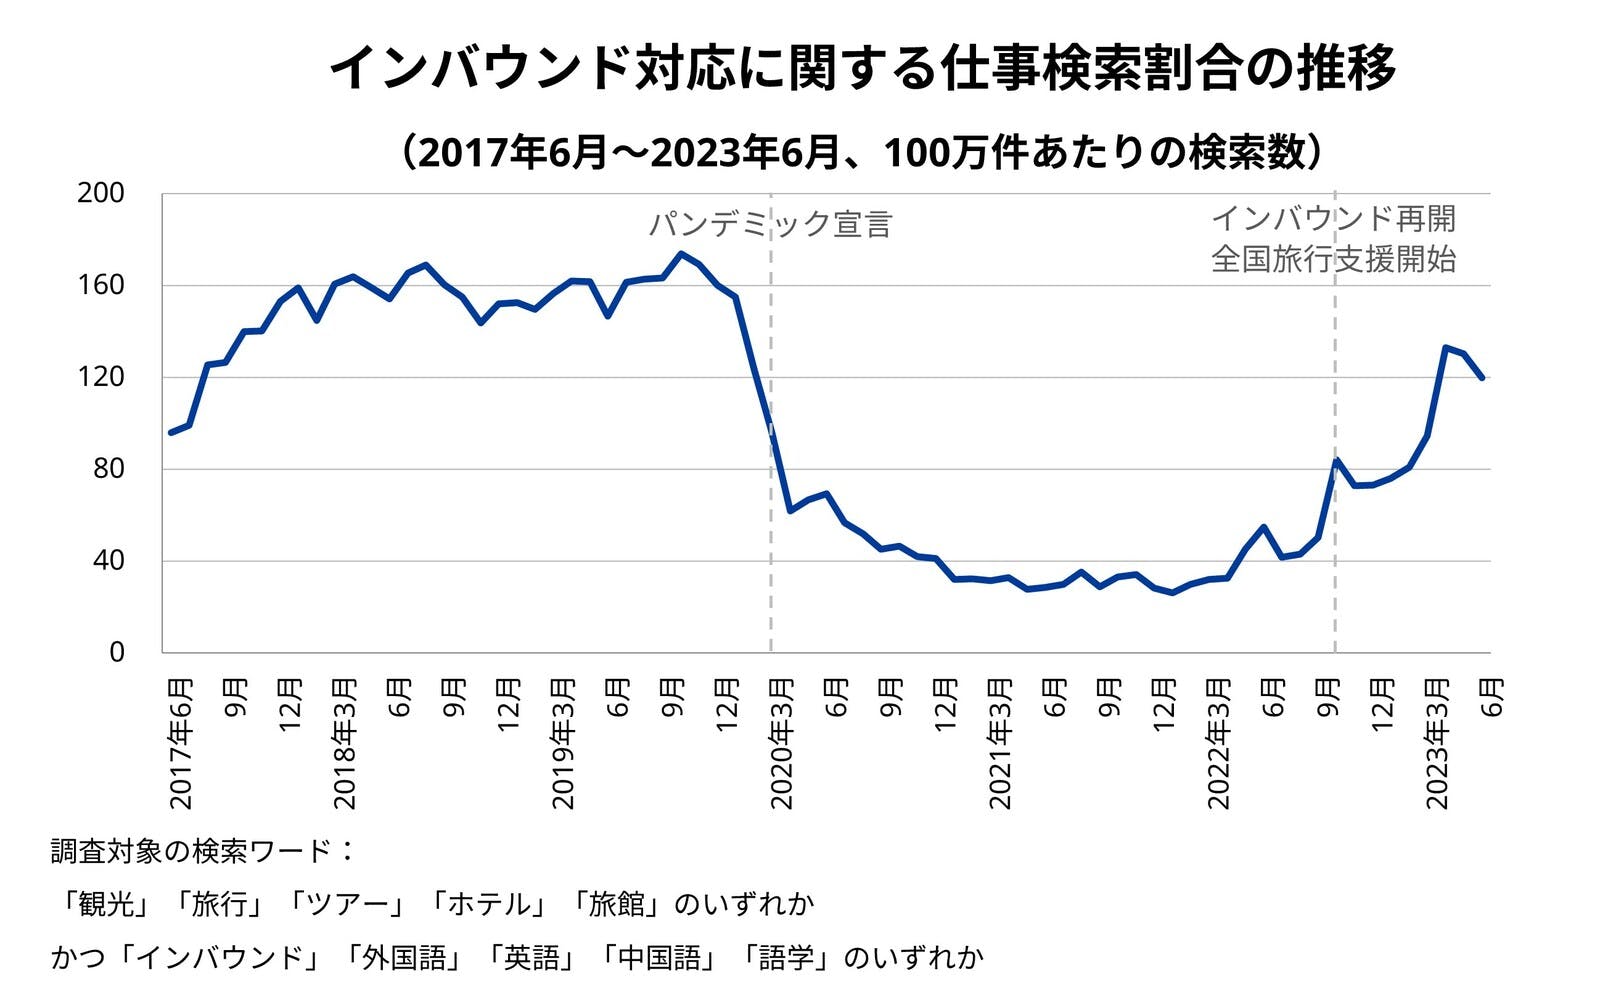 ▲インバウンド対応に関する仕事検索割合の推移：Indeed Japanプレスリリースより